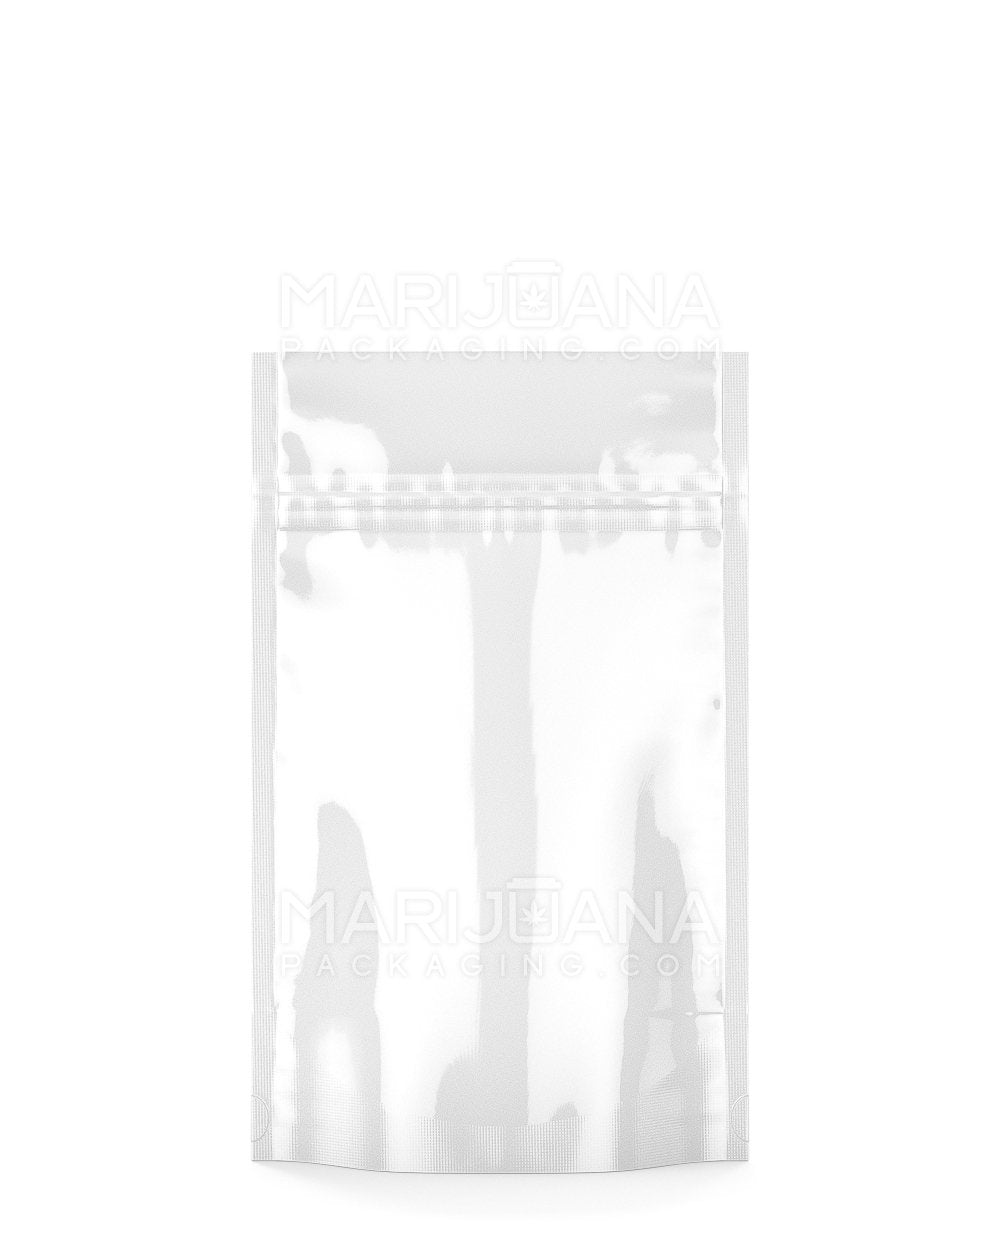 Tamper Evident | Glossy White Mylar Bag | 4in x 6.5in - 7g | Sample - 1